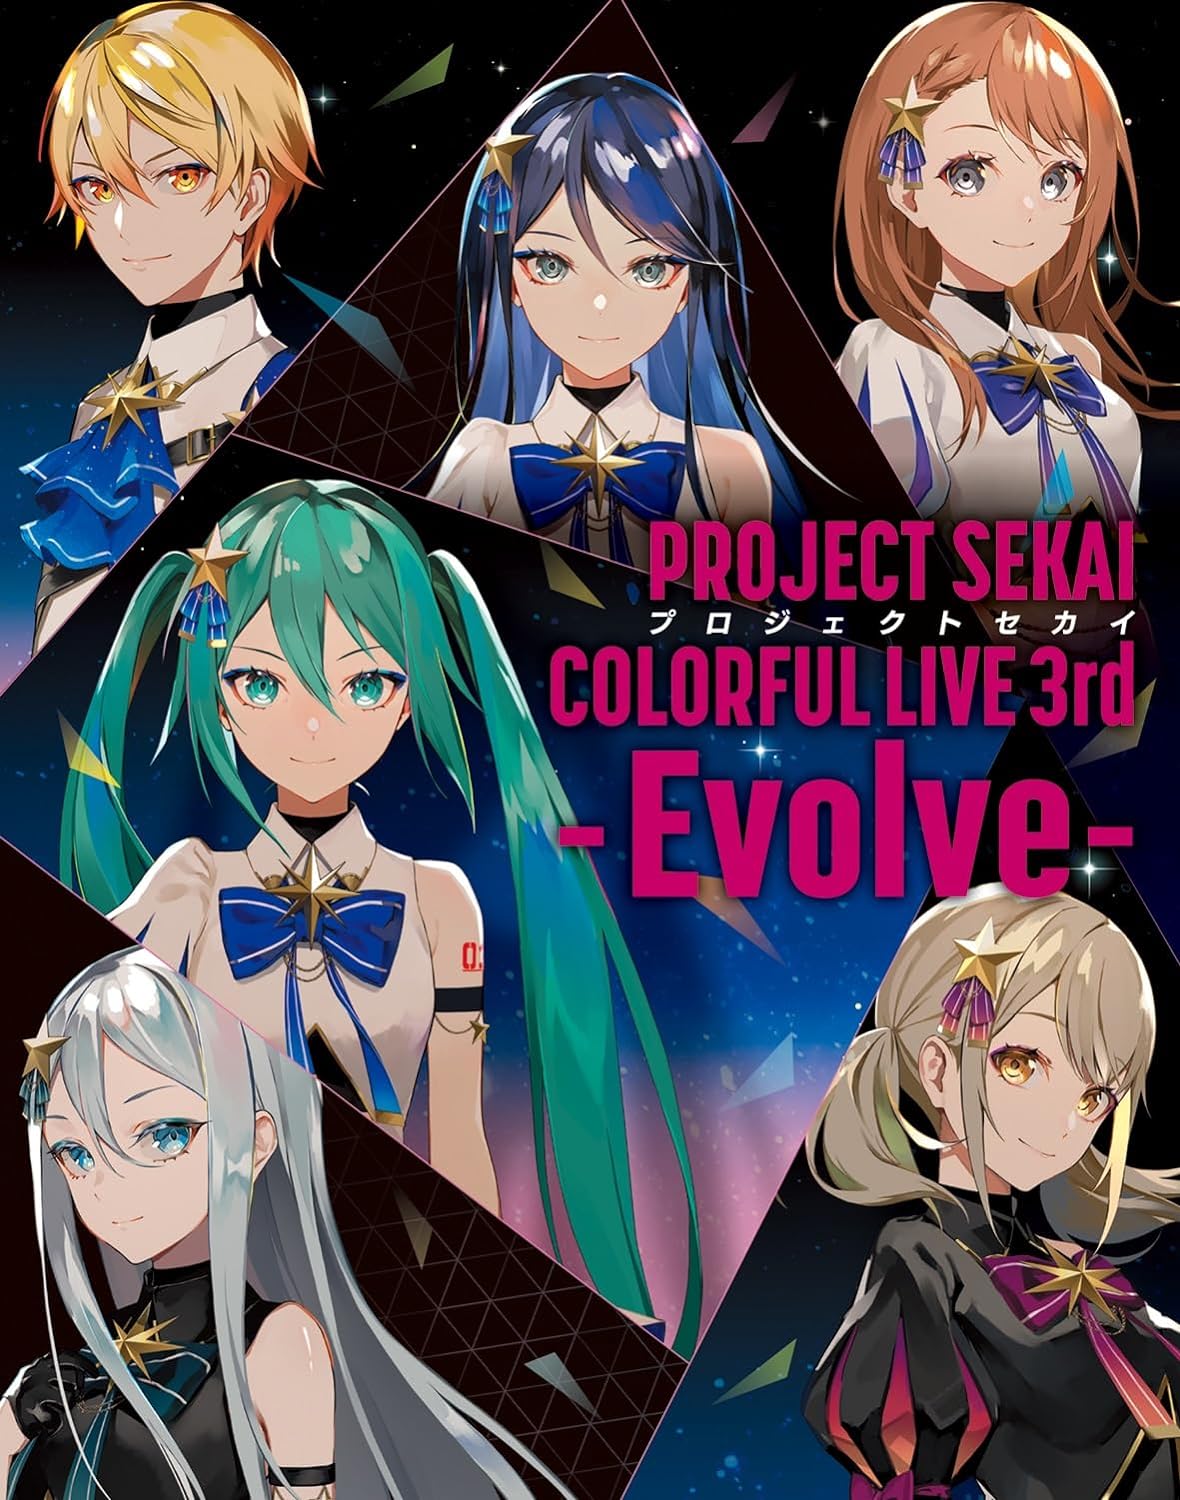 プロジェクトセカイ COLORFUL LIVE 3rd - Evolve -〔初回限定盤〕 [Blu-ray]